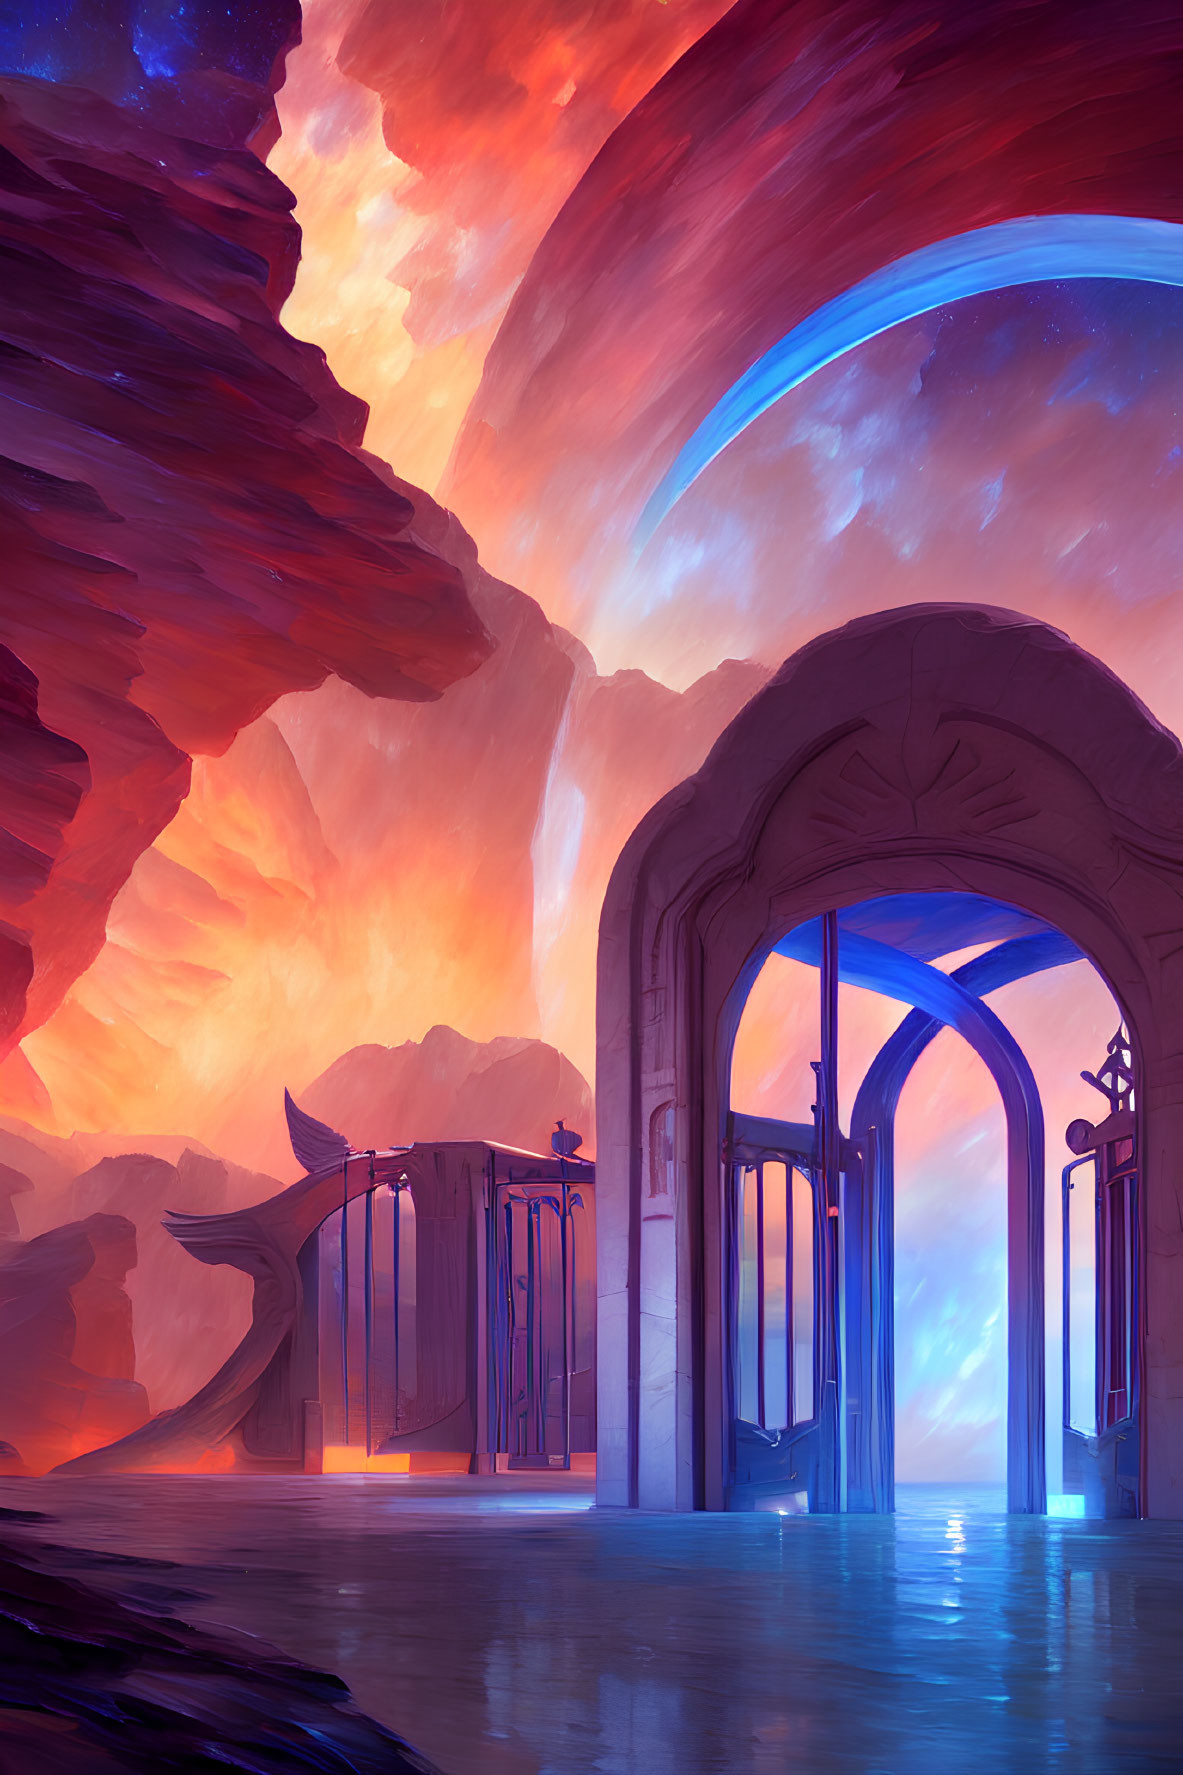 Intricate gate in vibrant sci-fi landscape under colorful sky